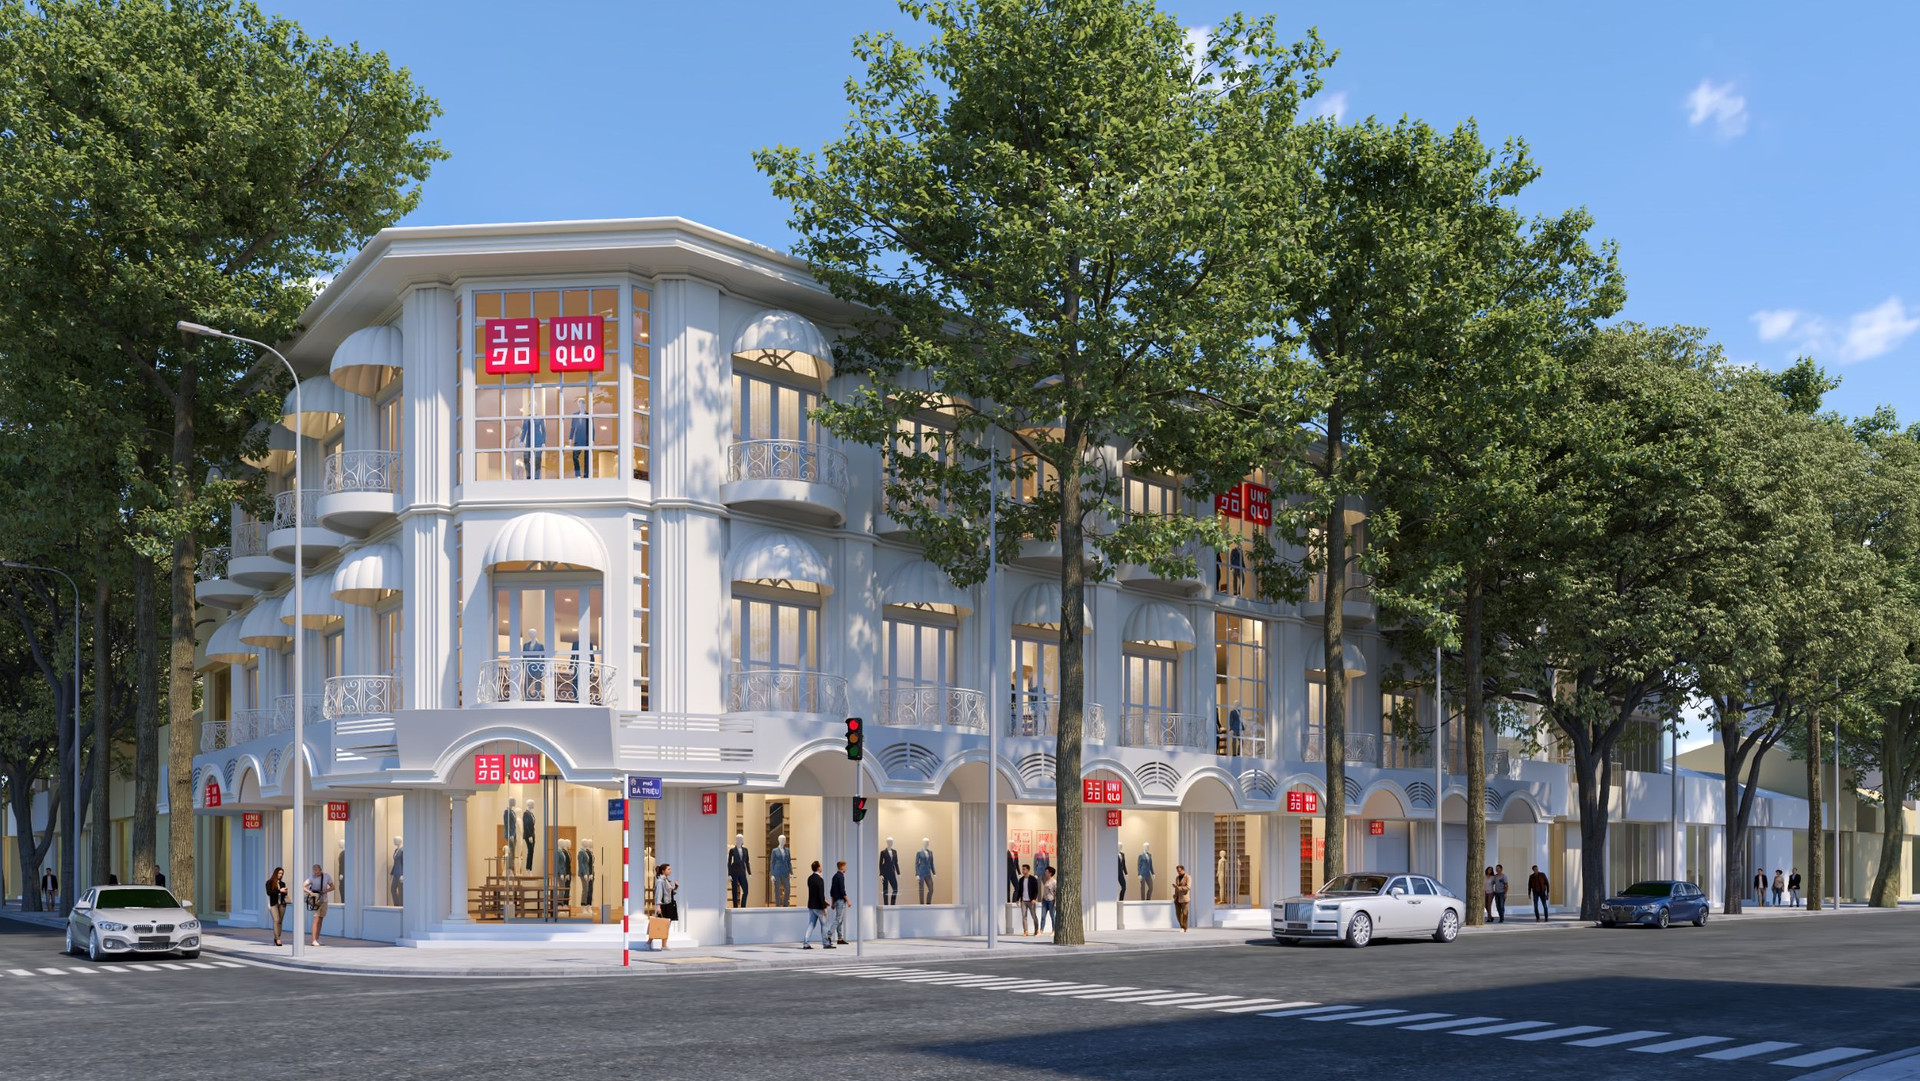 Đánh dấu cửa hàng thứ 10 ở Hà Nội, UNIQLO thuê hẳn mặt bằng 3 tầng giữa trung tâm đất vàng thủ đô - Ảnh 1.